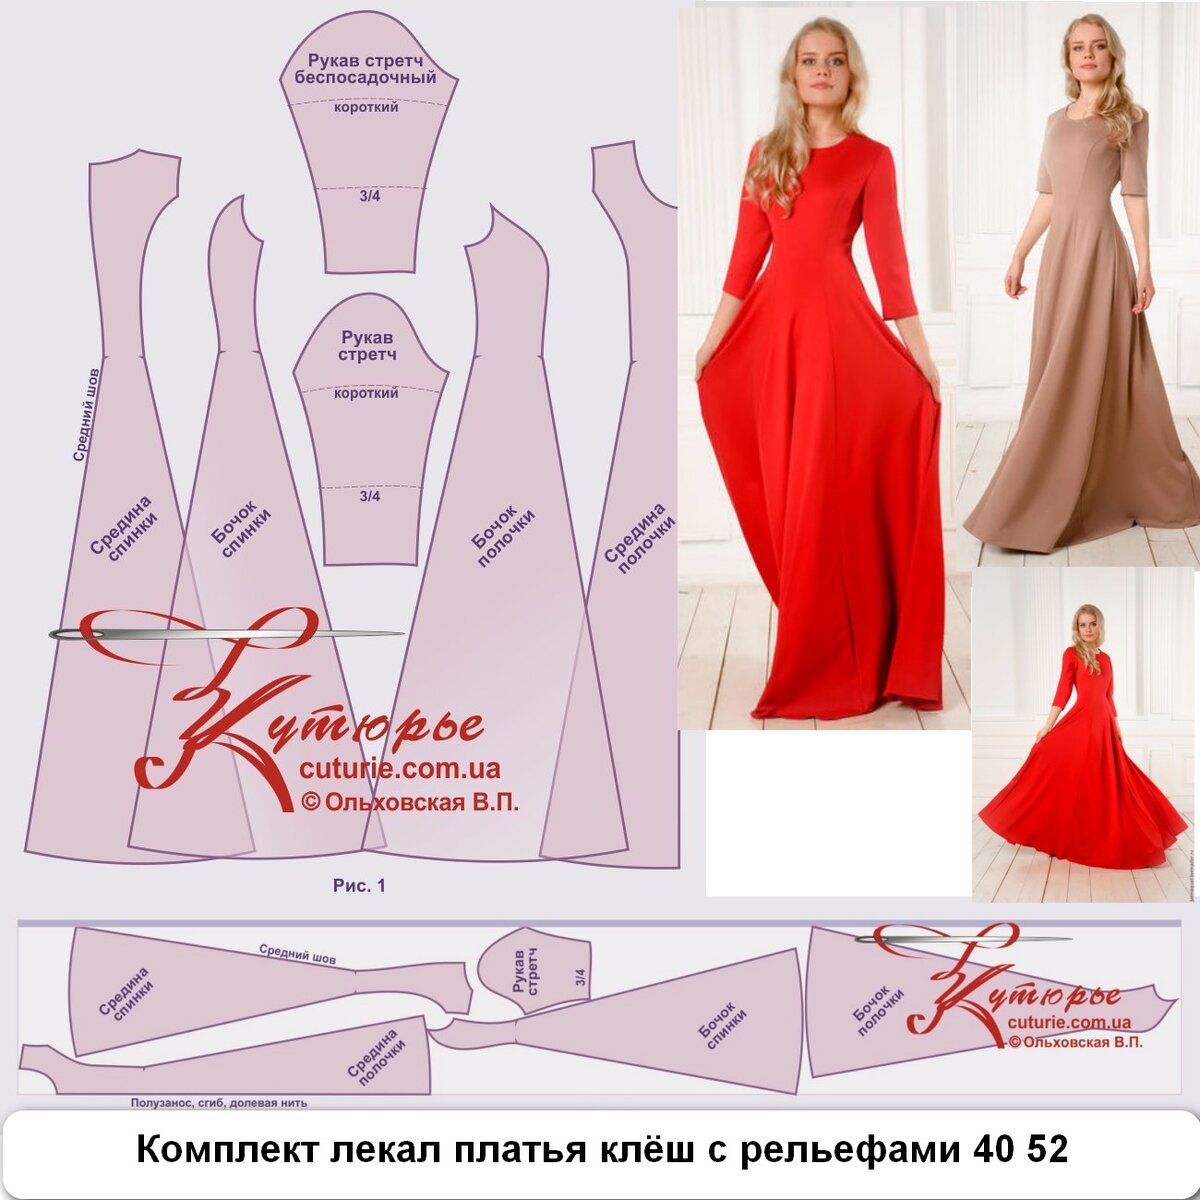 ✂️ Выкройка для начинающих простого длинного платья в пол и как сшить это платье своими руками